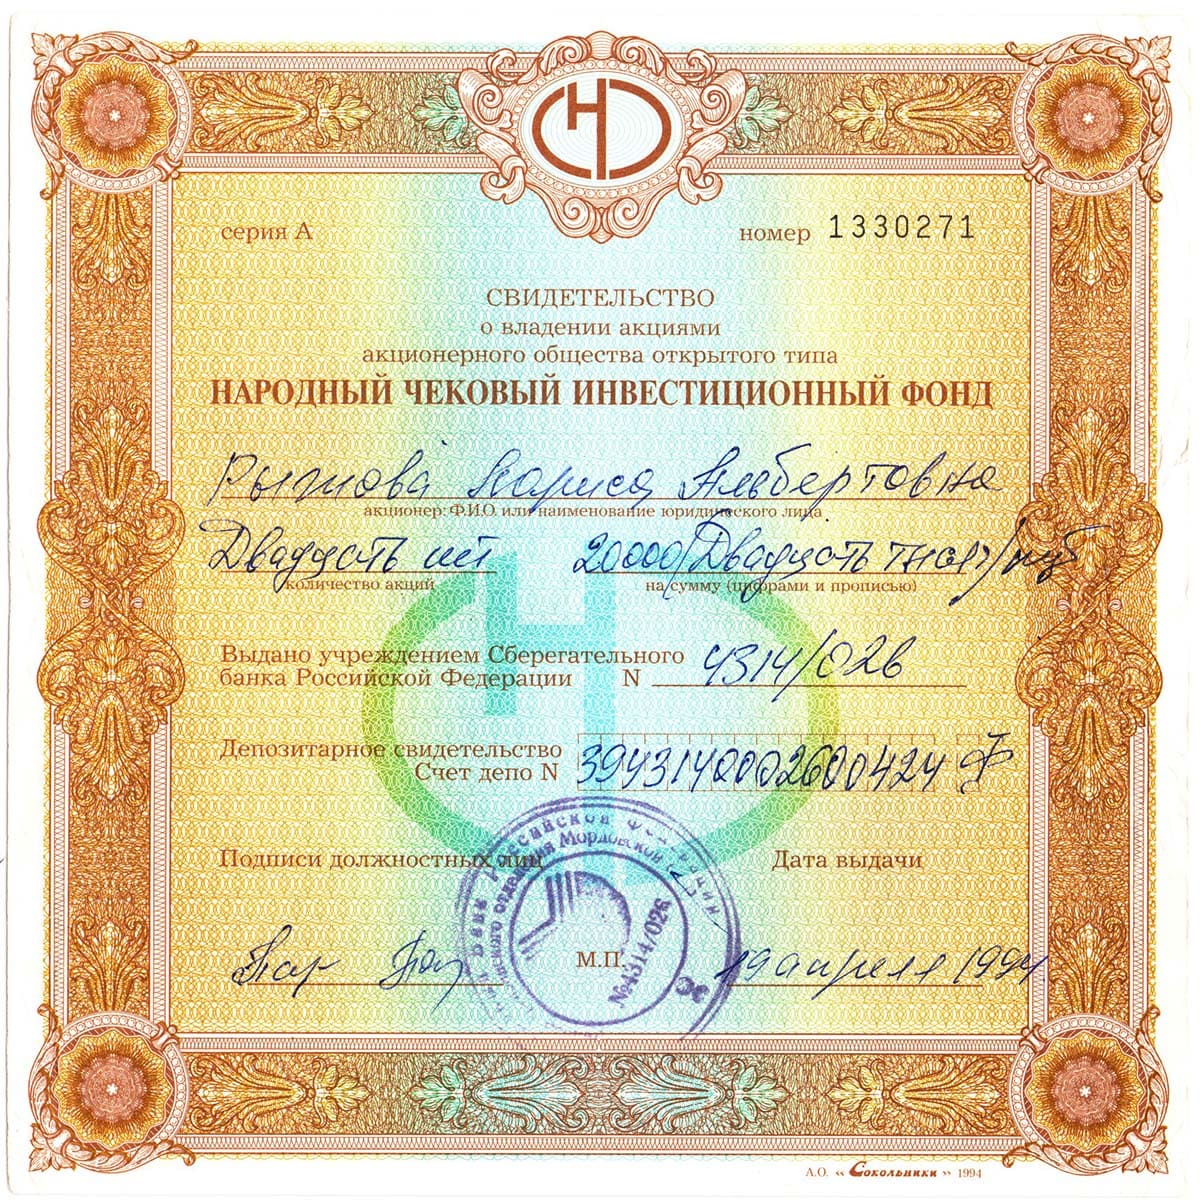 ОАО Народный чековый инвестиционный фонд. Москва, 1994.